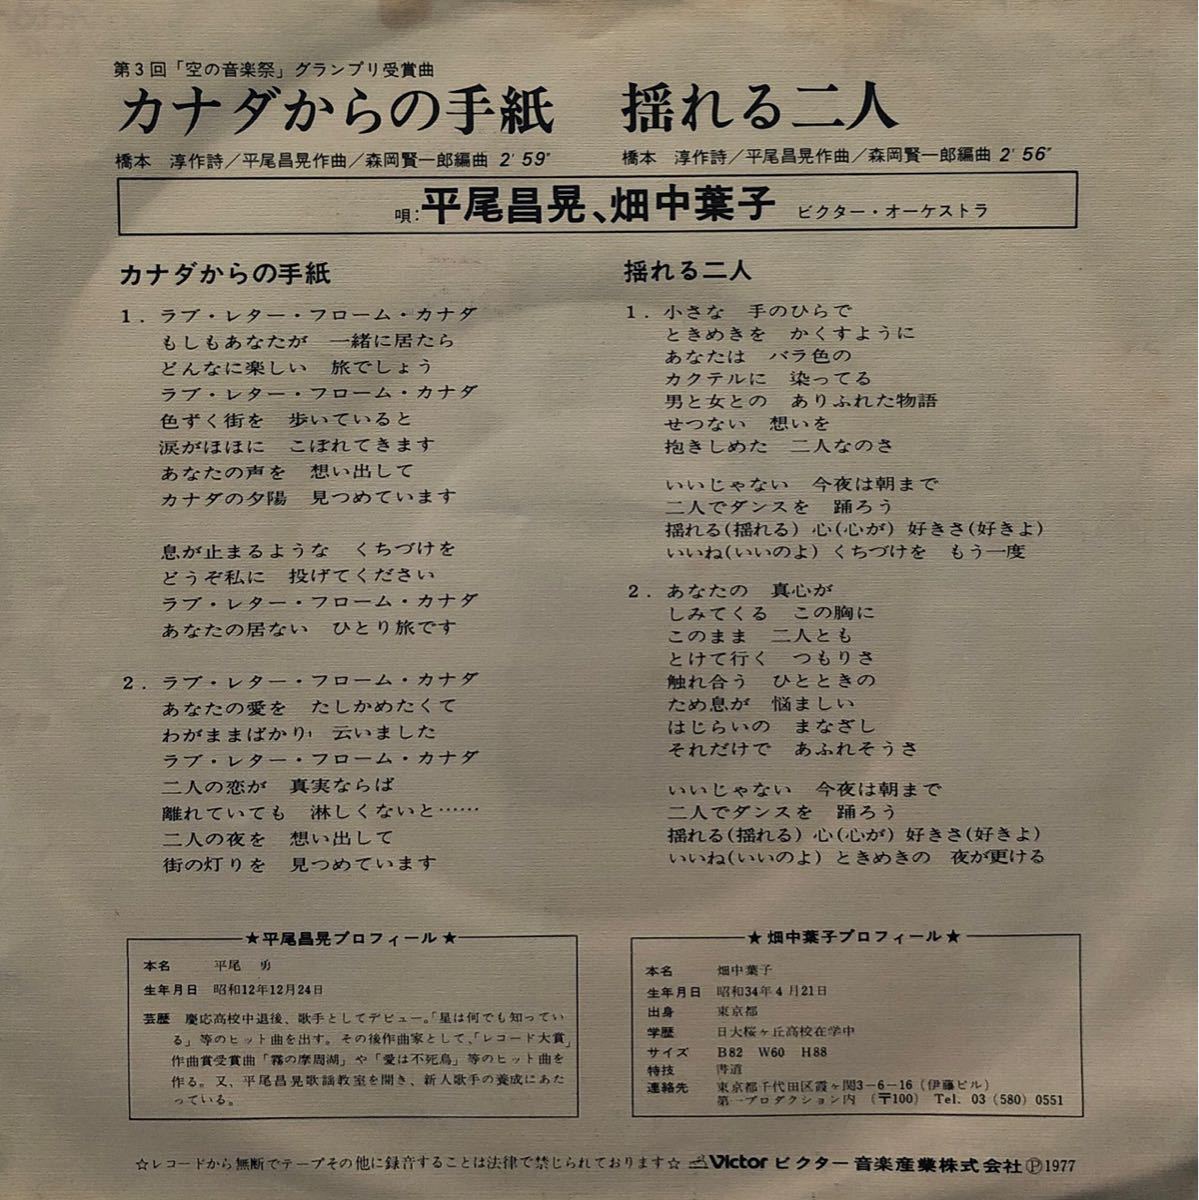 【EP】【7インチレコード】1977年 平尾昌晃 畑中葉子 / カナダからの手紙 / 揺れる二人_画像2